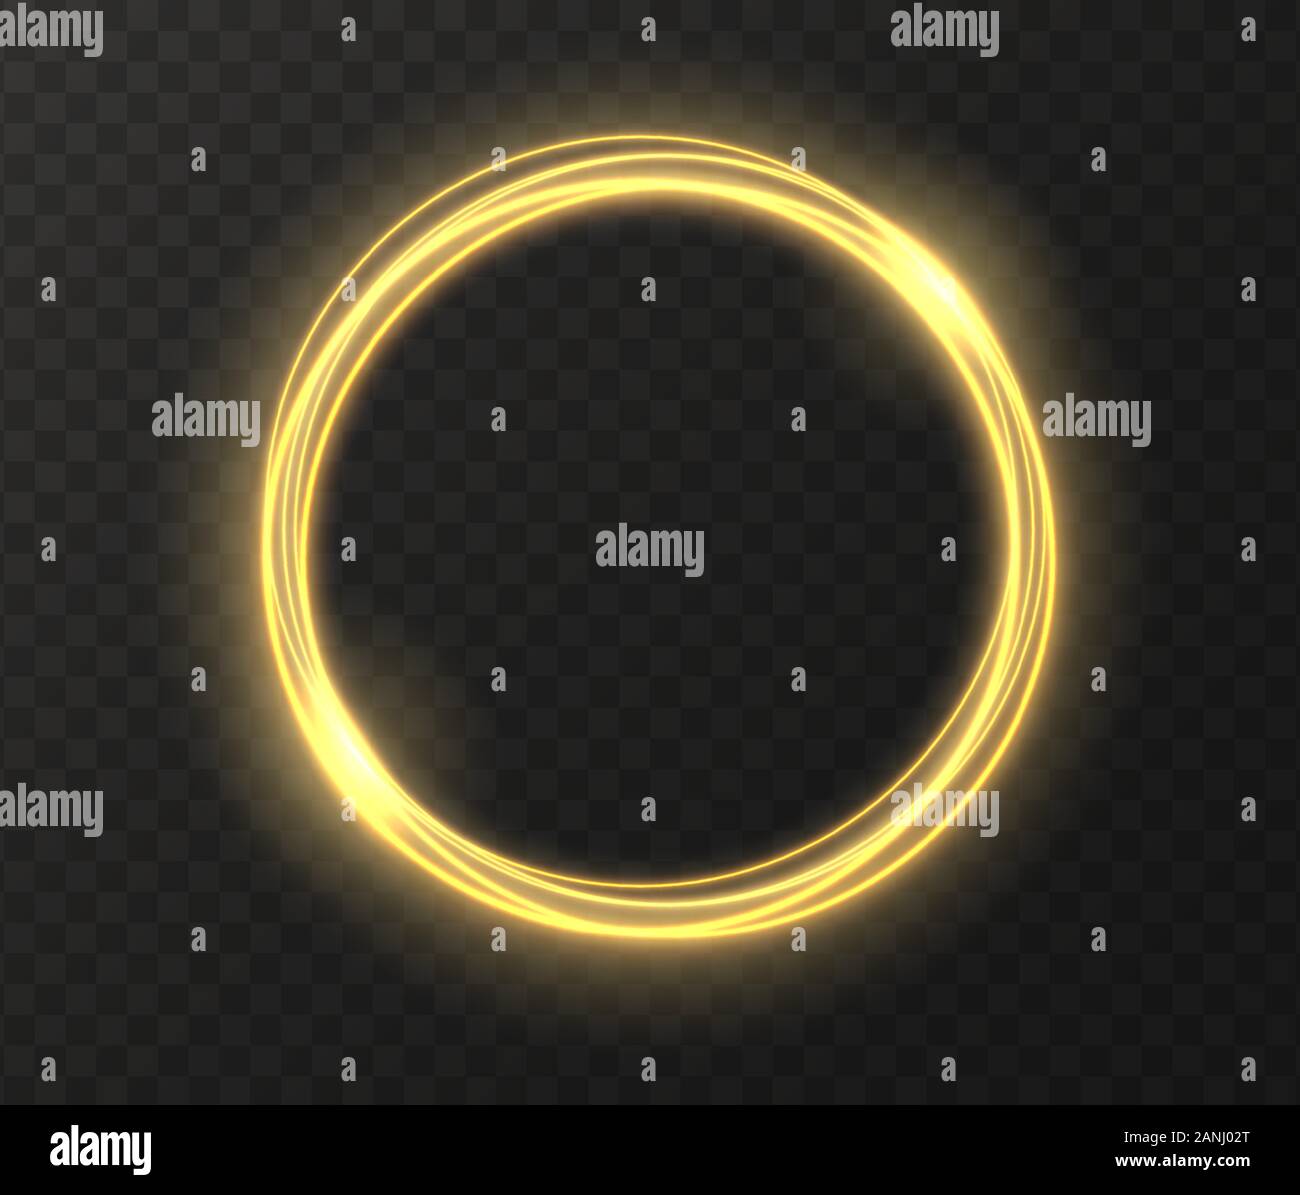 Golden leuchtenden Kreis auf transparentem Hintergrund isoliert. Yellow Magic Ring Lichteffekt. Stock Vektor